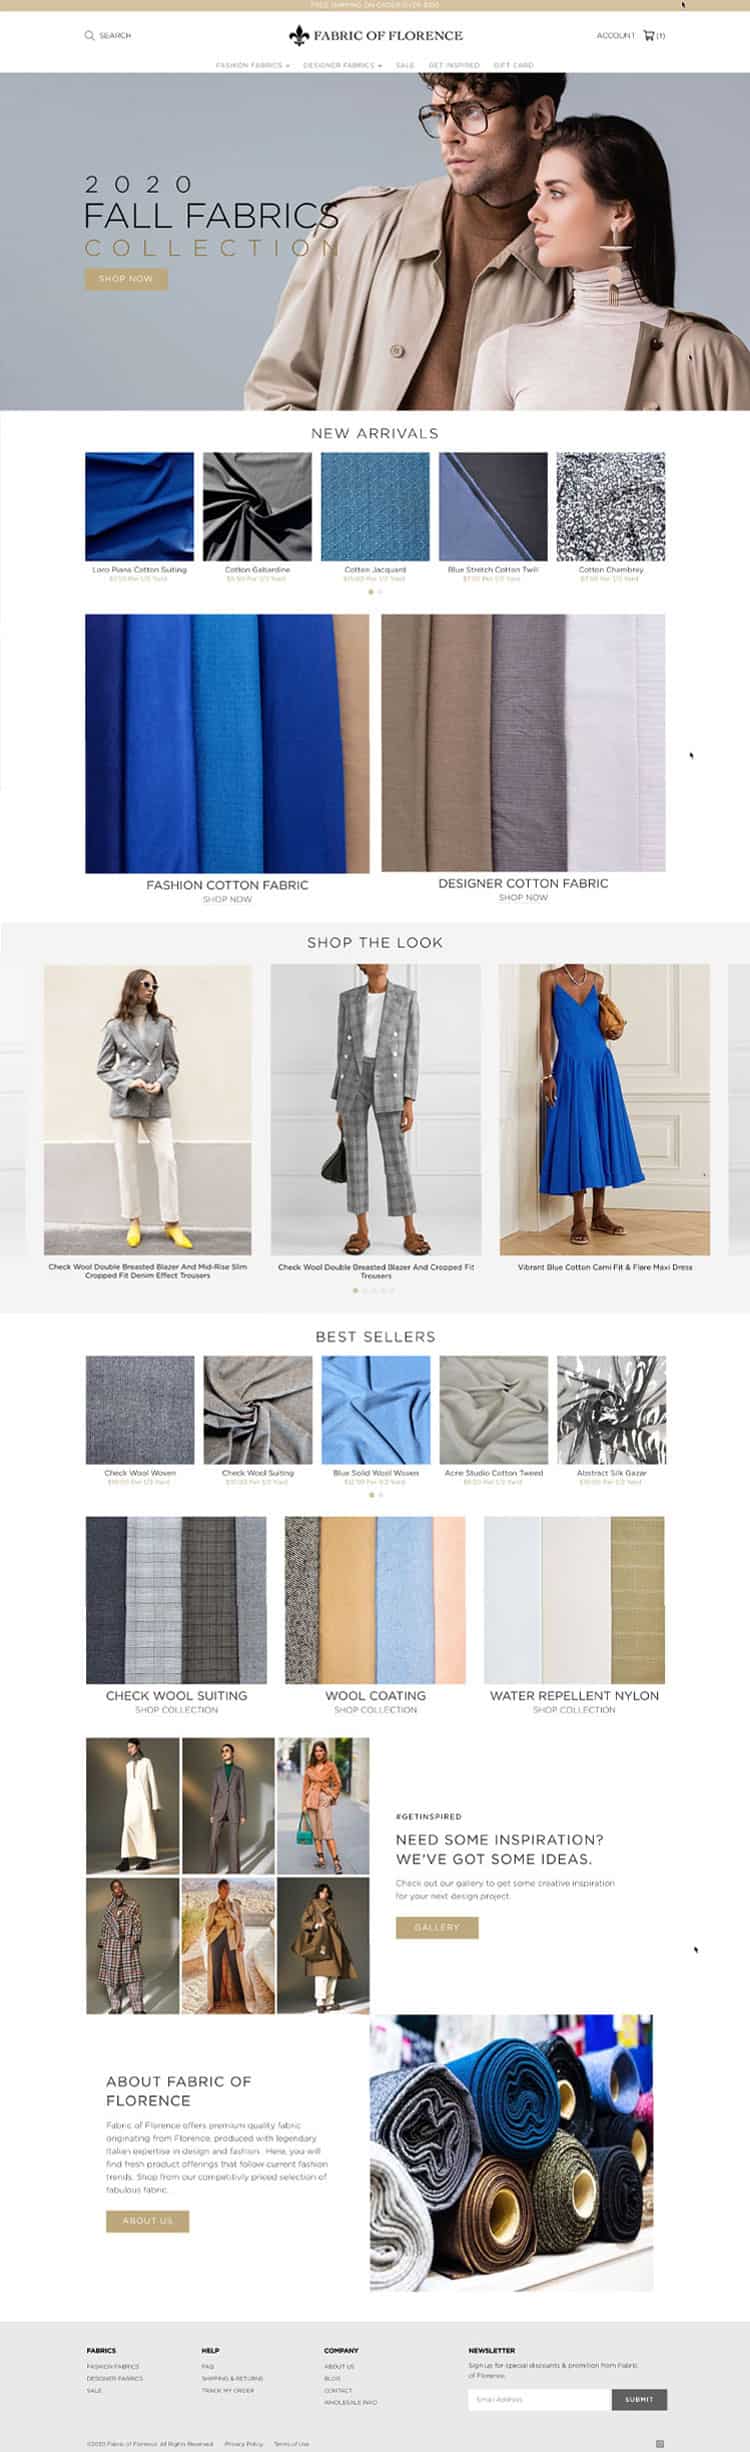 Miami Shopify Website Design